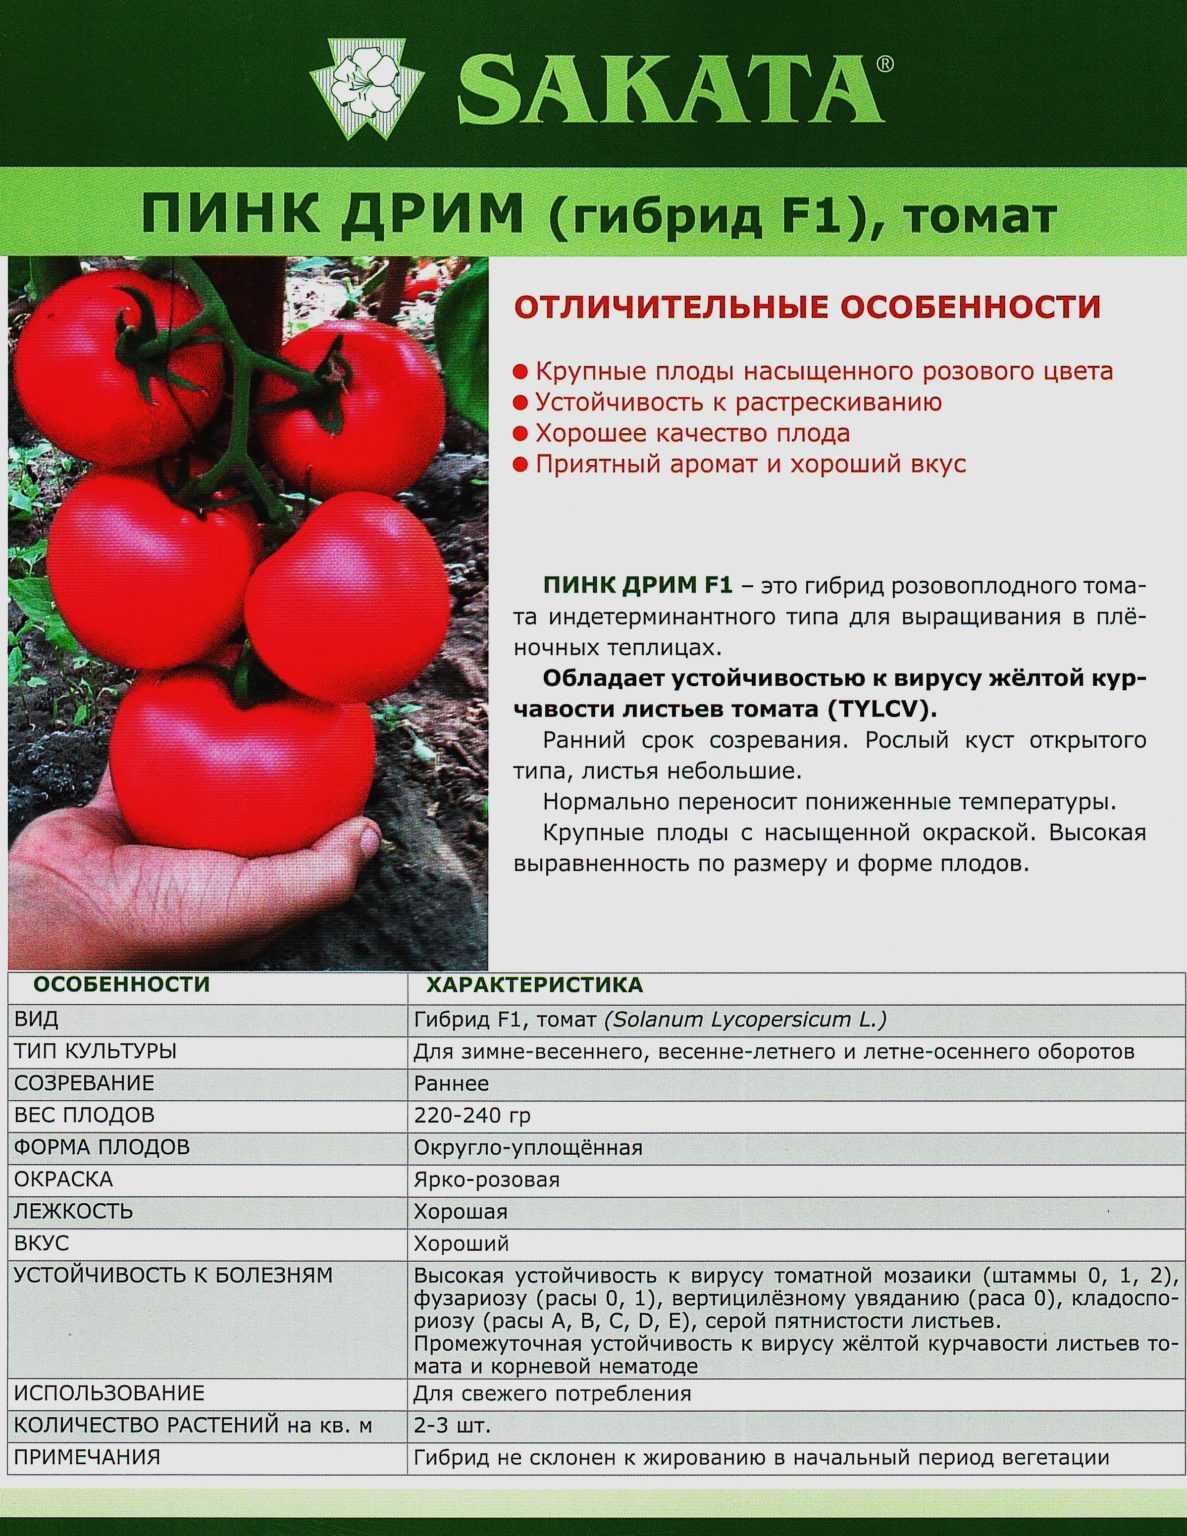 Томат надежда f1: отзывы огородников со стажем, фото полученного урожая помидоров, описание сорта, его преимущества и недостатки | сортовед